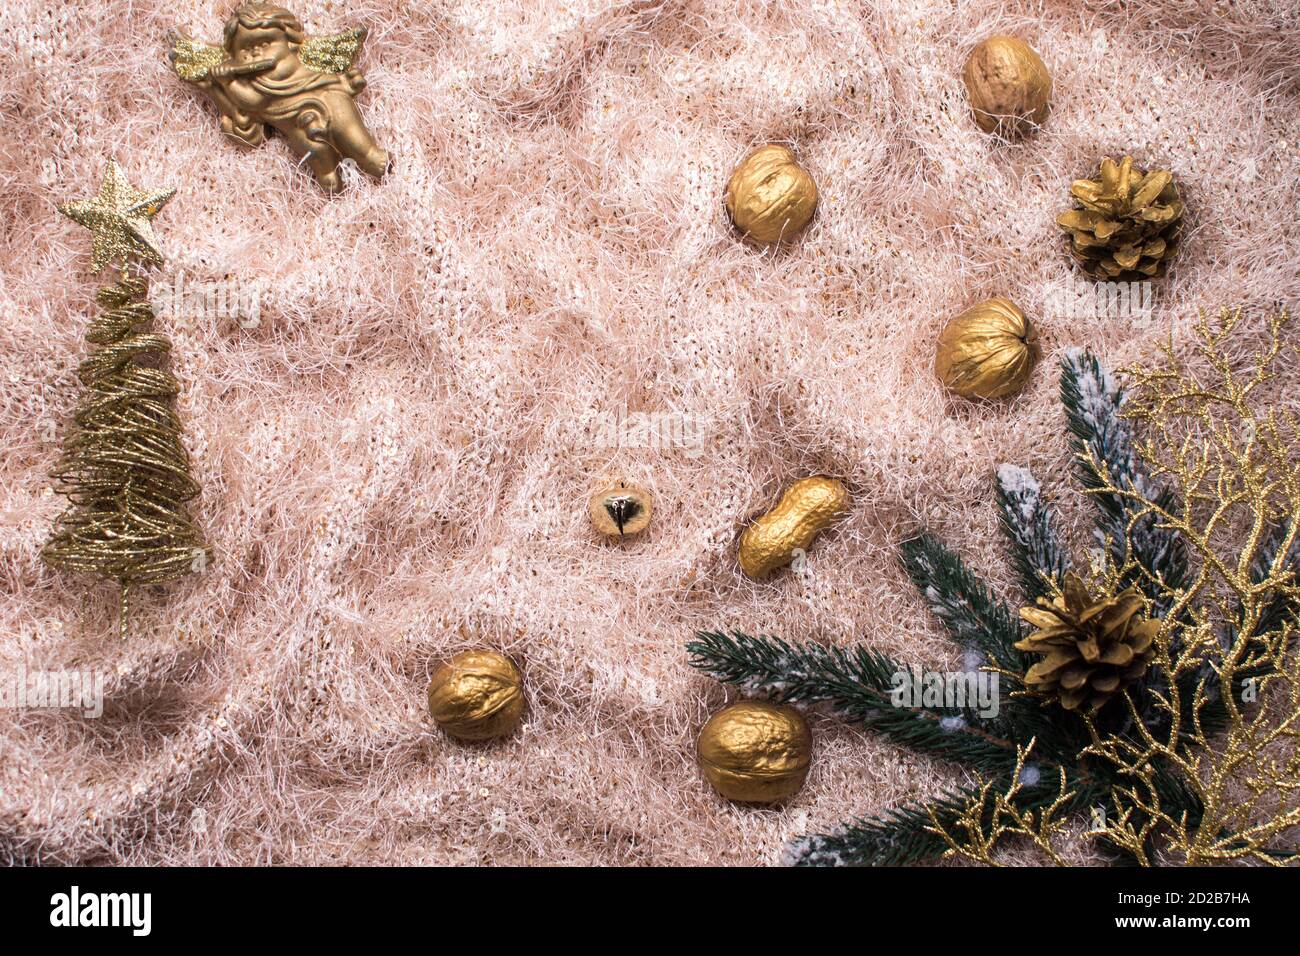 Weihnachts-Layout auf einem Stoffhintergrund. Attribute des neuen Jahres. Christbaumzweige, goldene Nüsse, Fichtenzweig, goldener Baum. Stockfoto